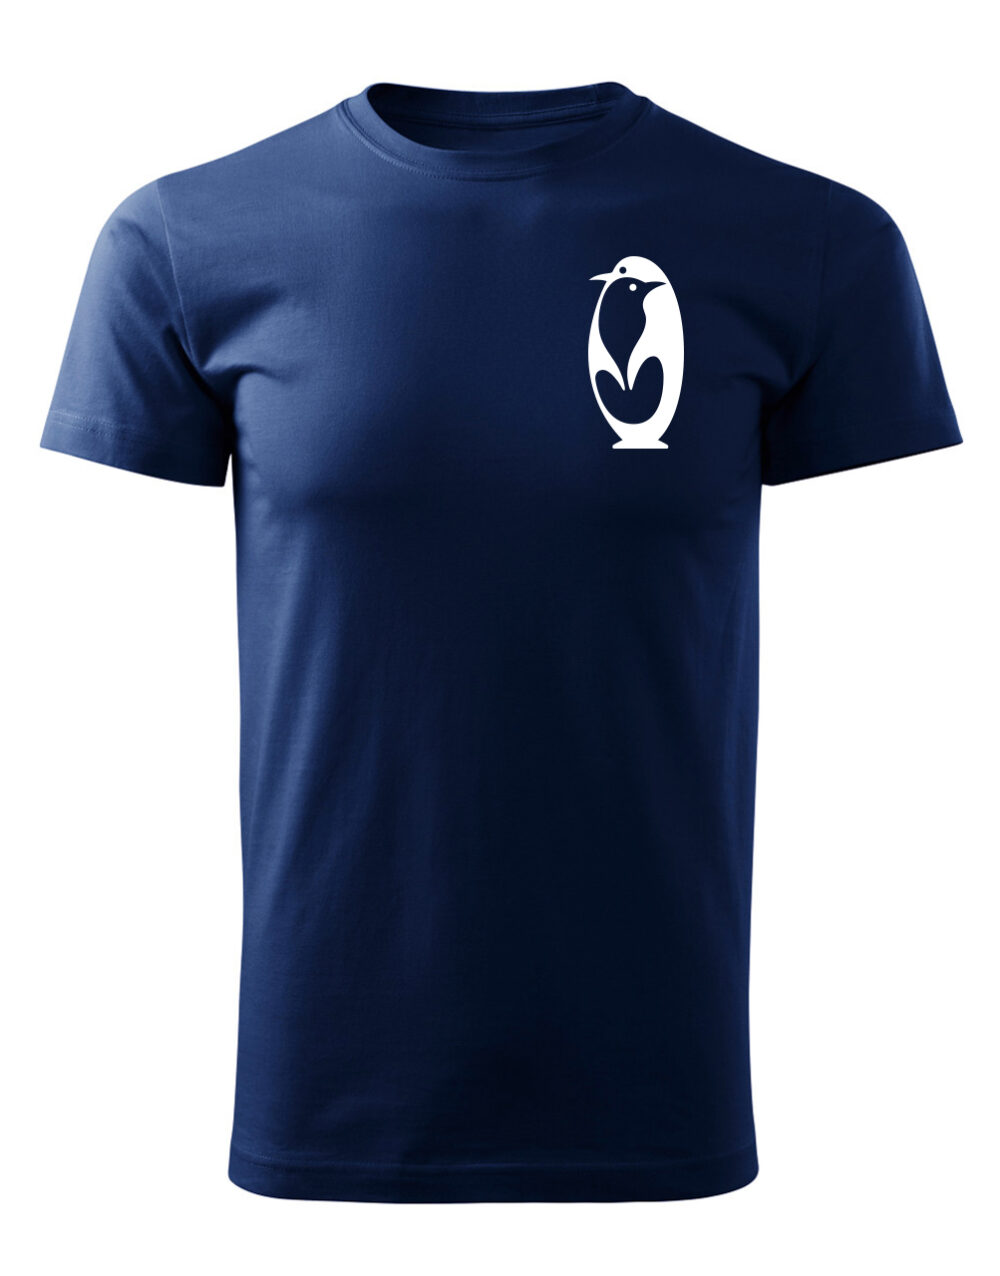 Pánské tričko s potiskem Tučňák námořní modrá